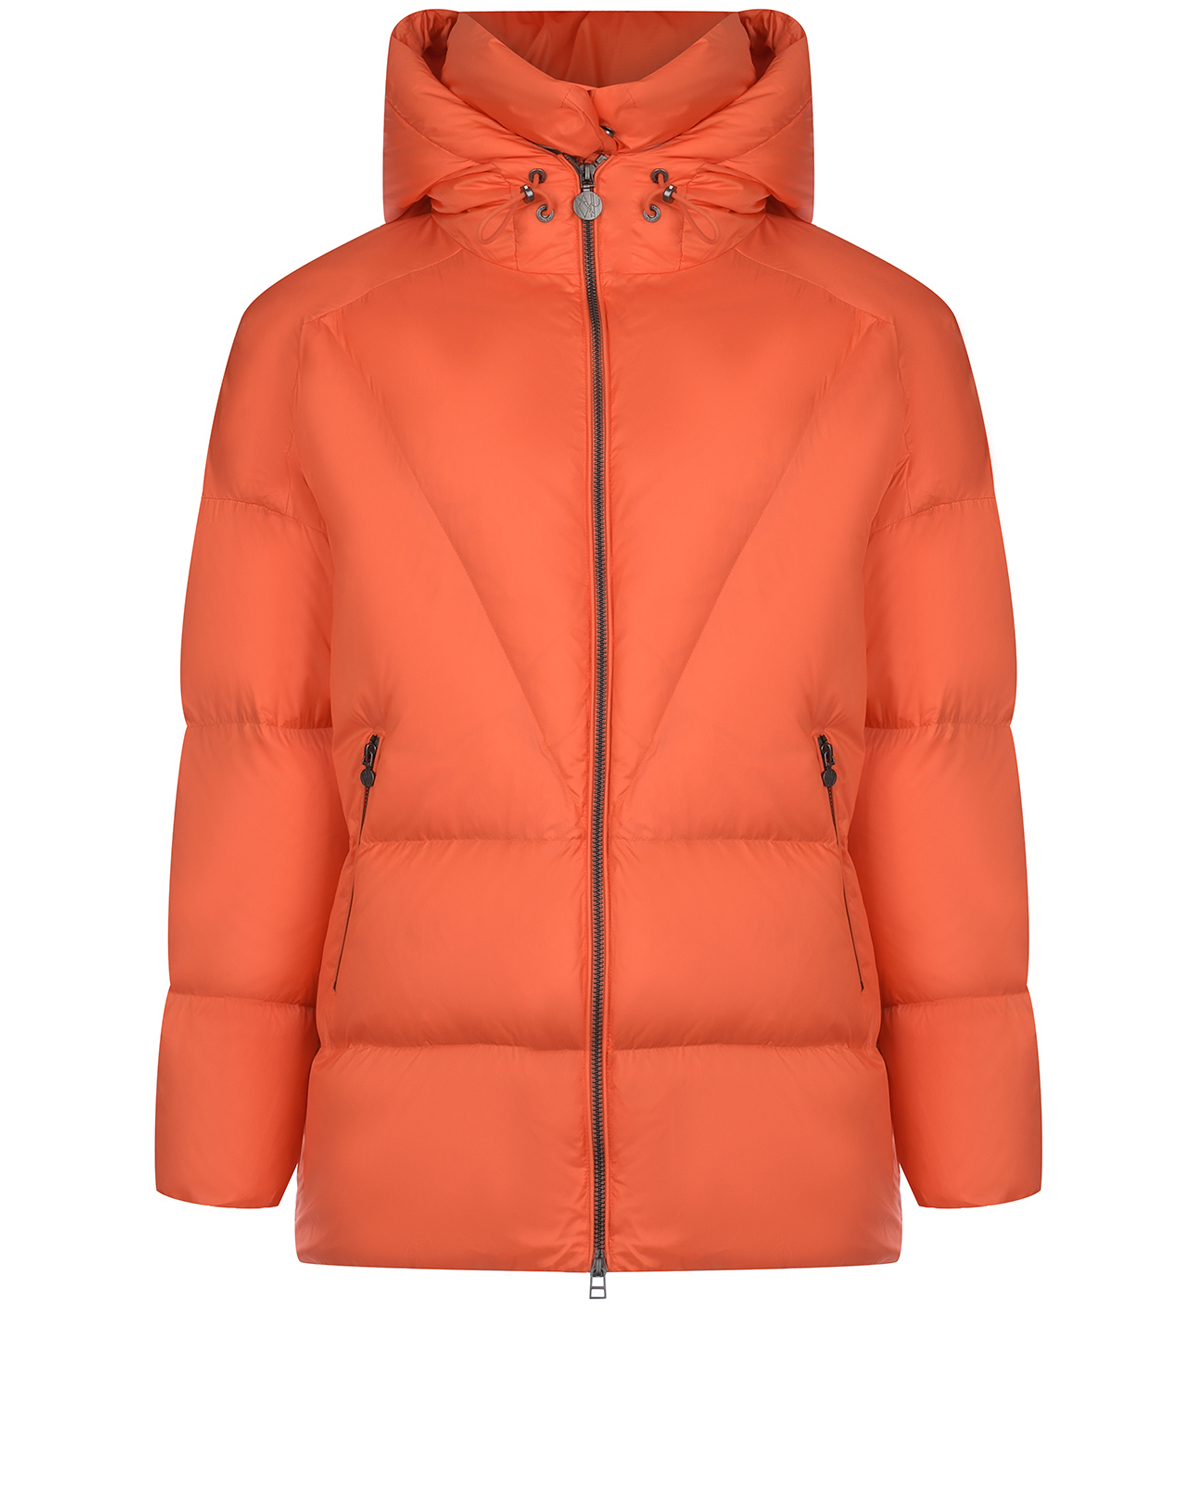 Удлиненная оранжевая куртка с капюшоном Naumi, размер 38, цвет оранжевый - фото 1